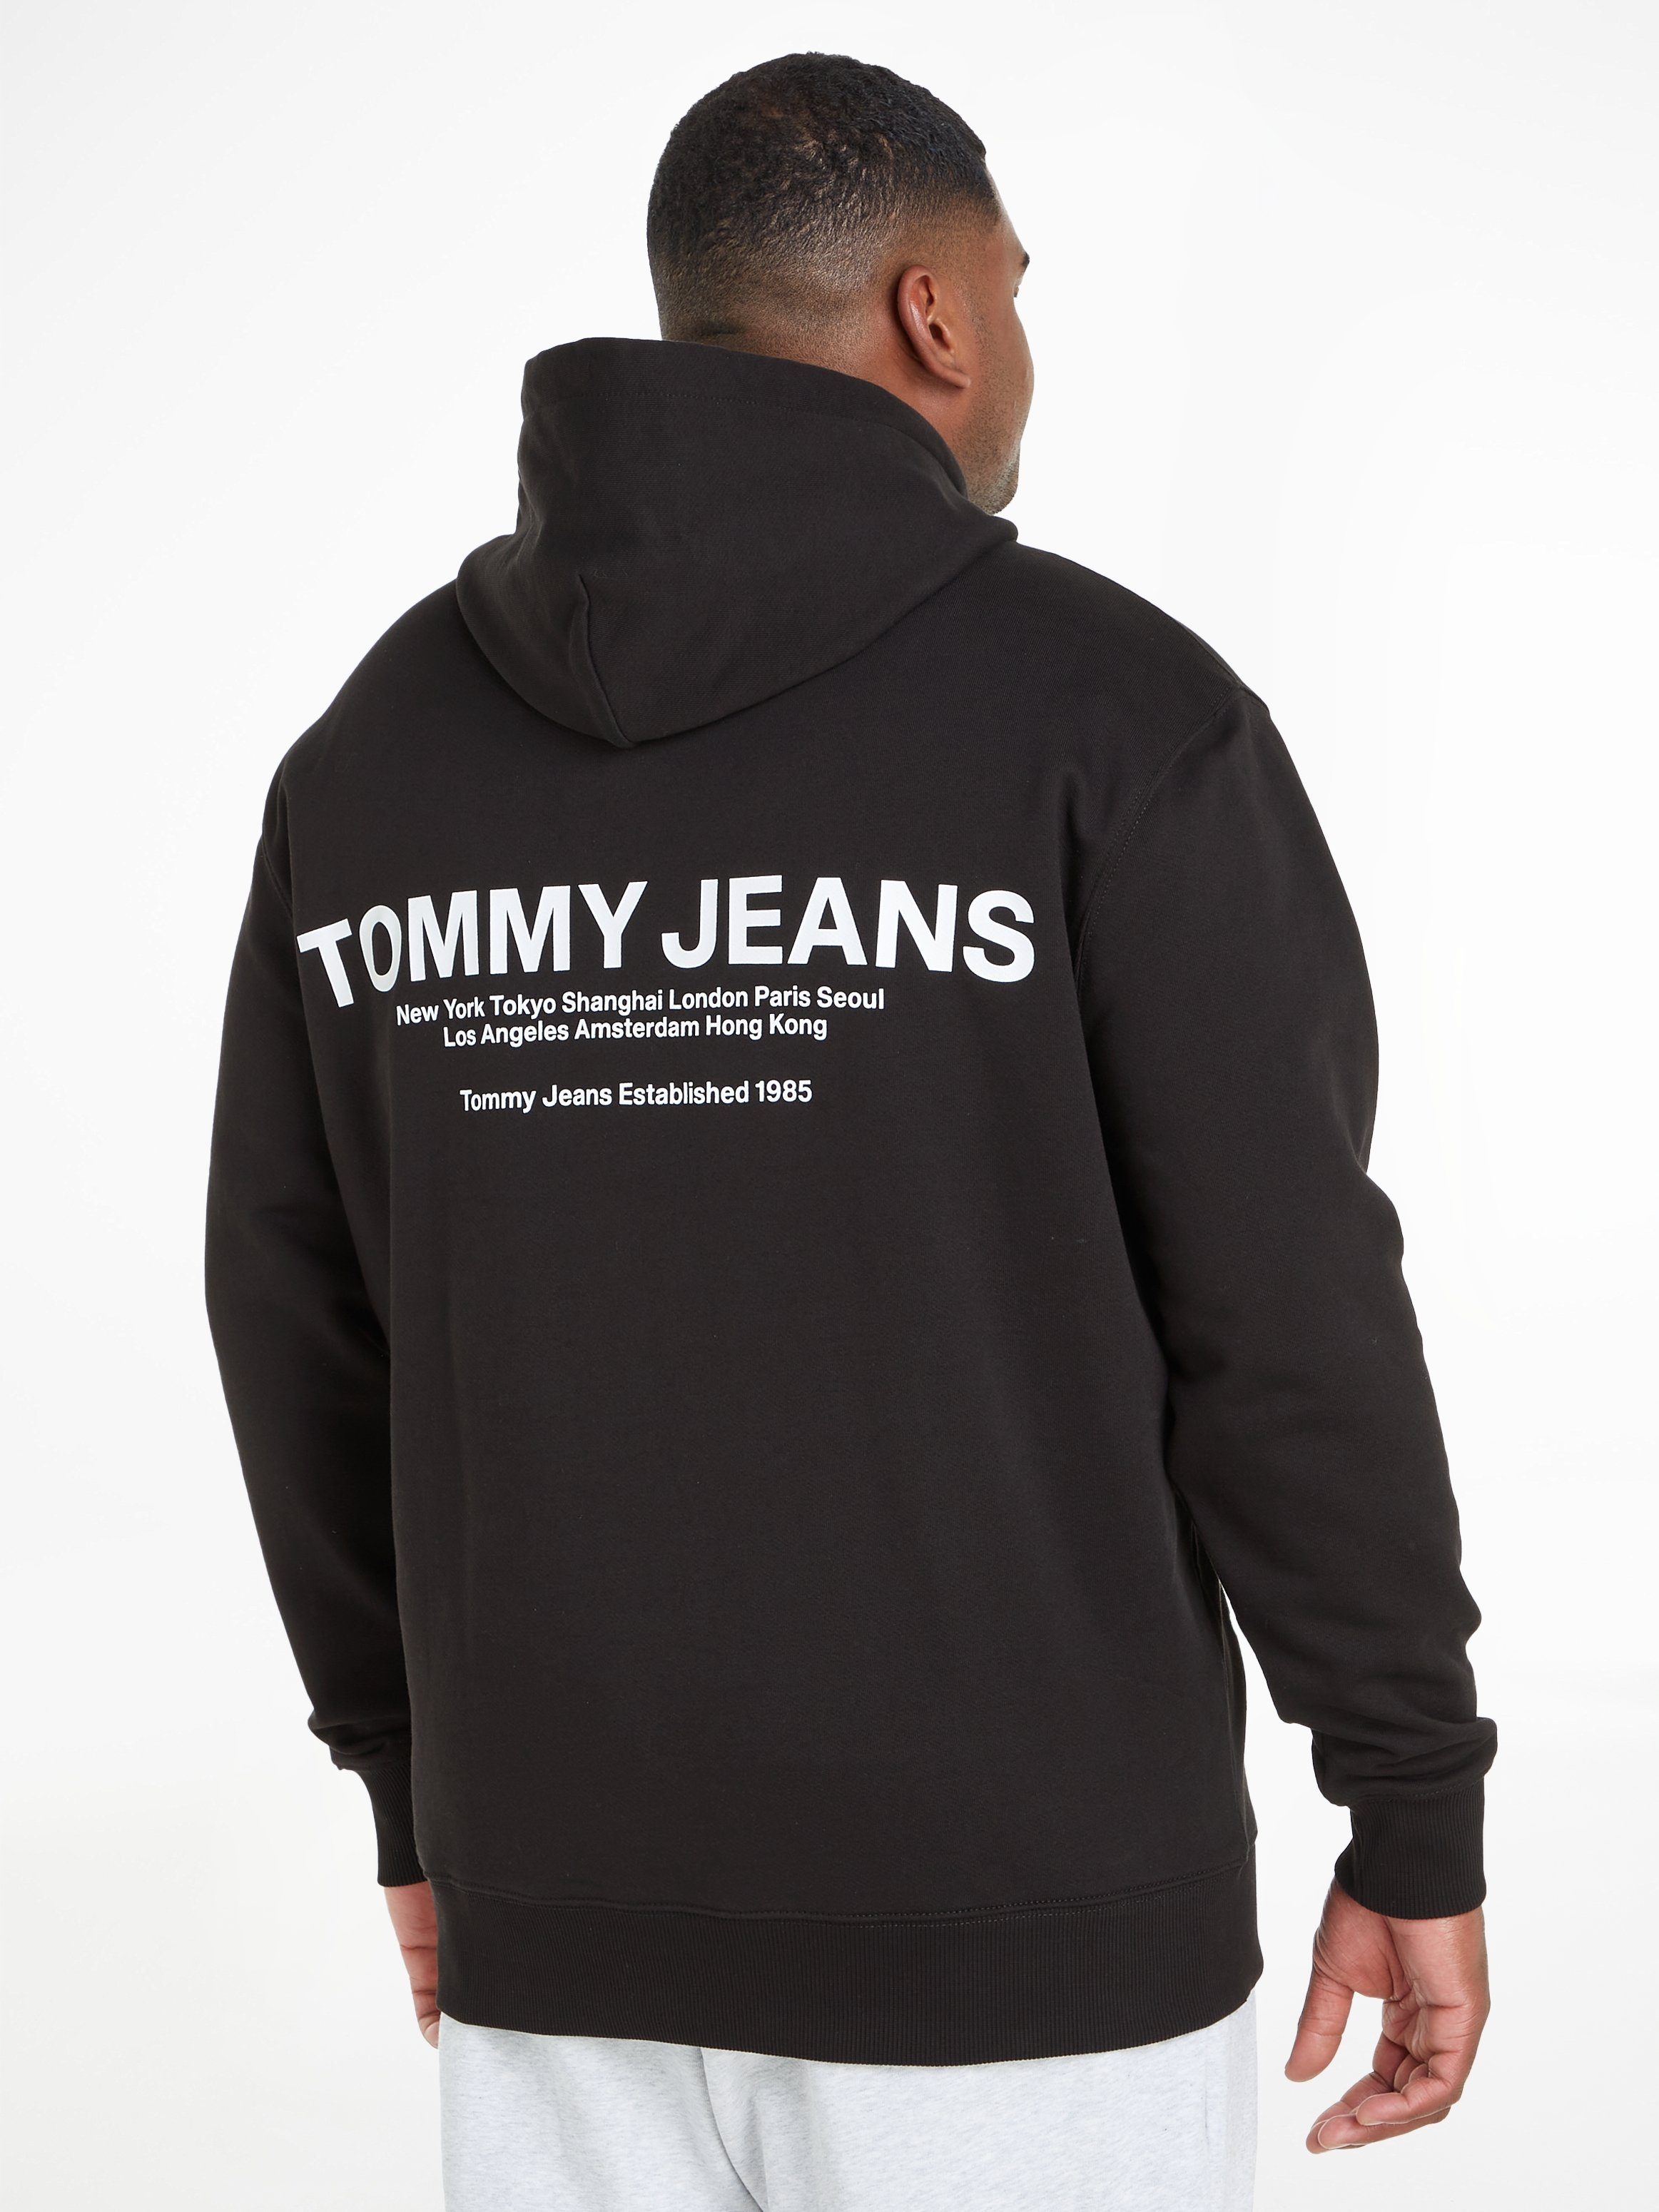 HOOD Plus Black Hoodie TJM Jeans GRAPHIC Tommy REG PLUS ENTRY